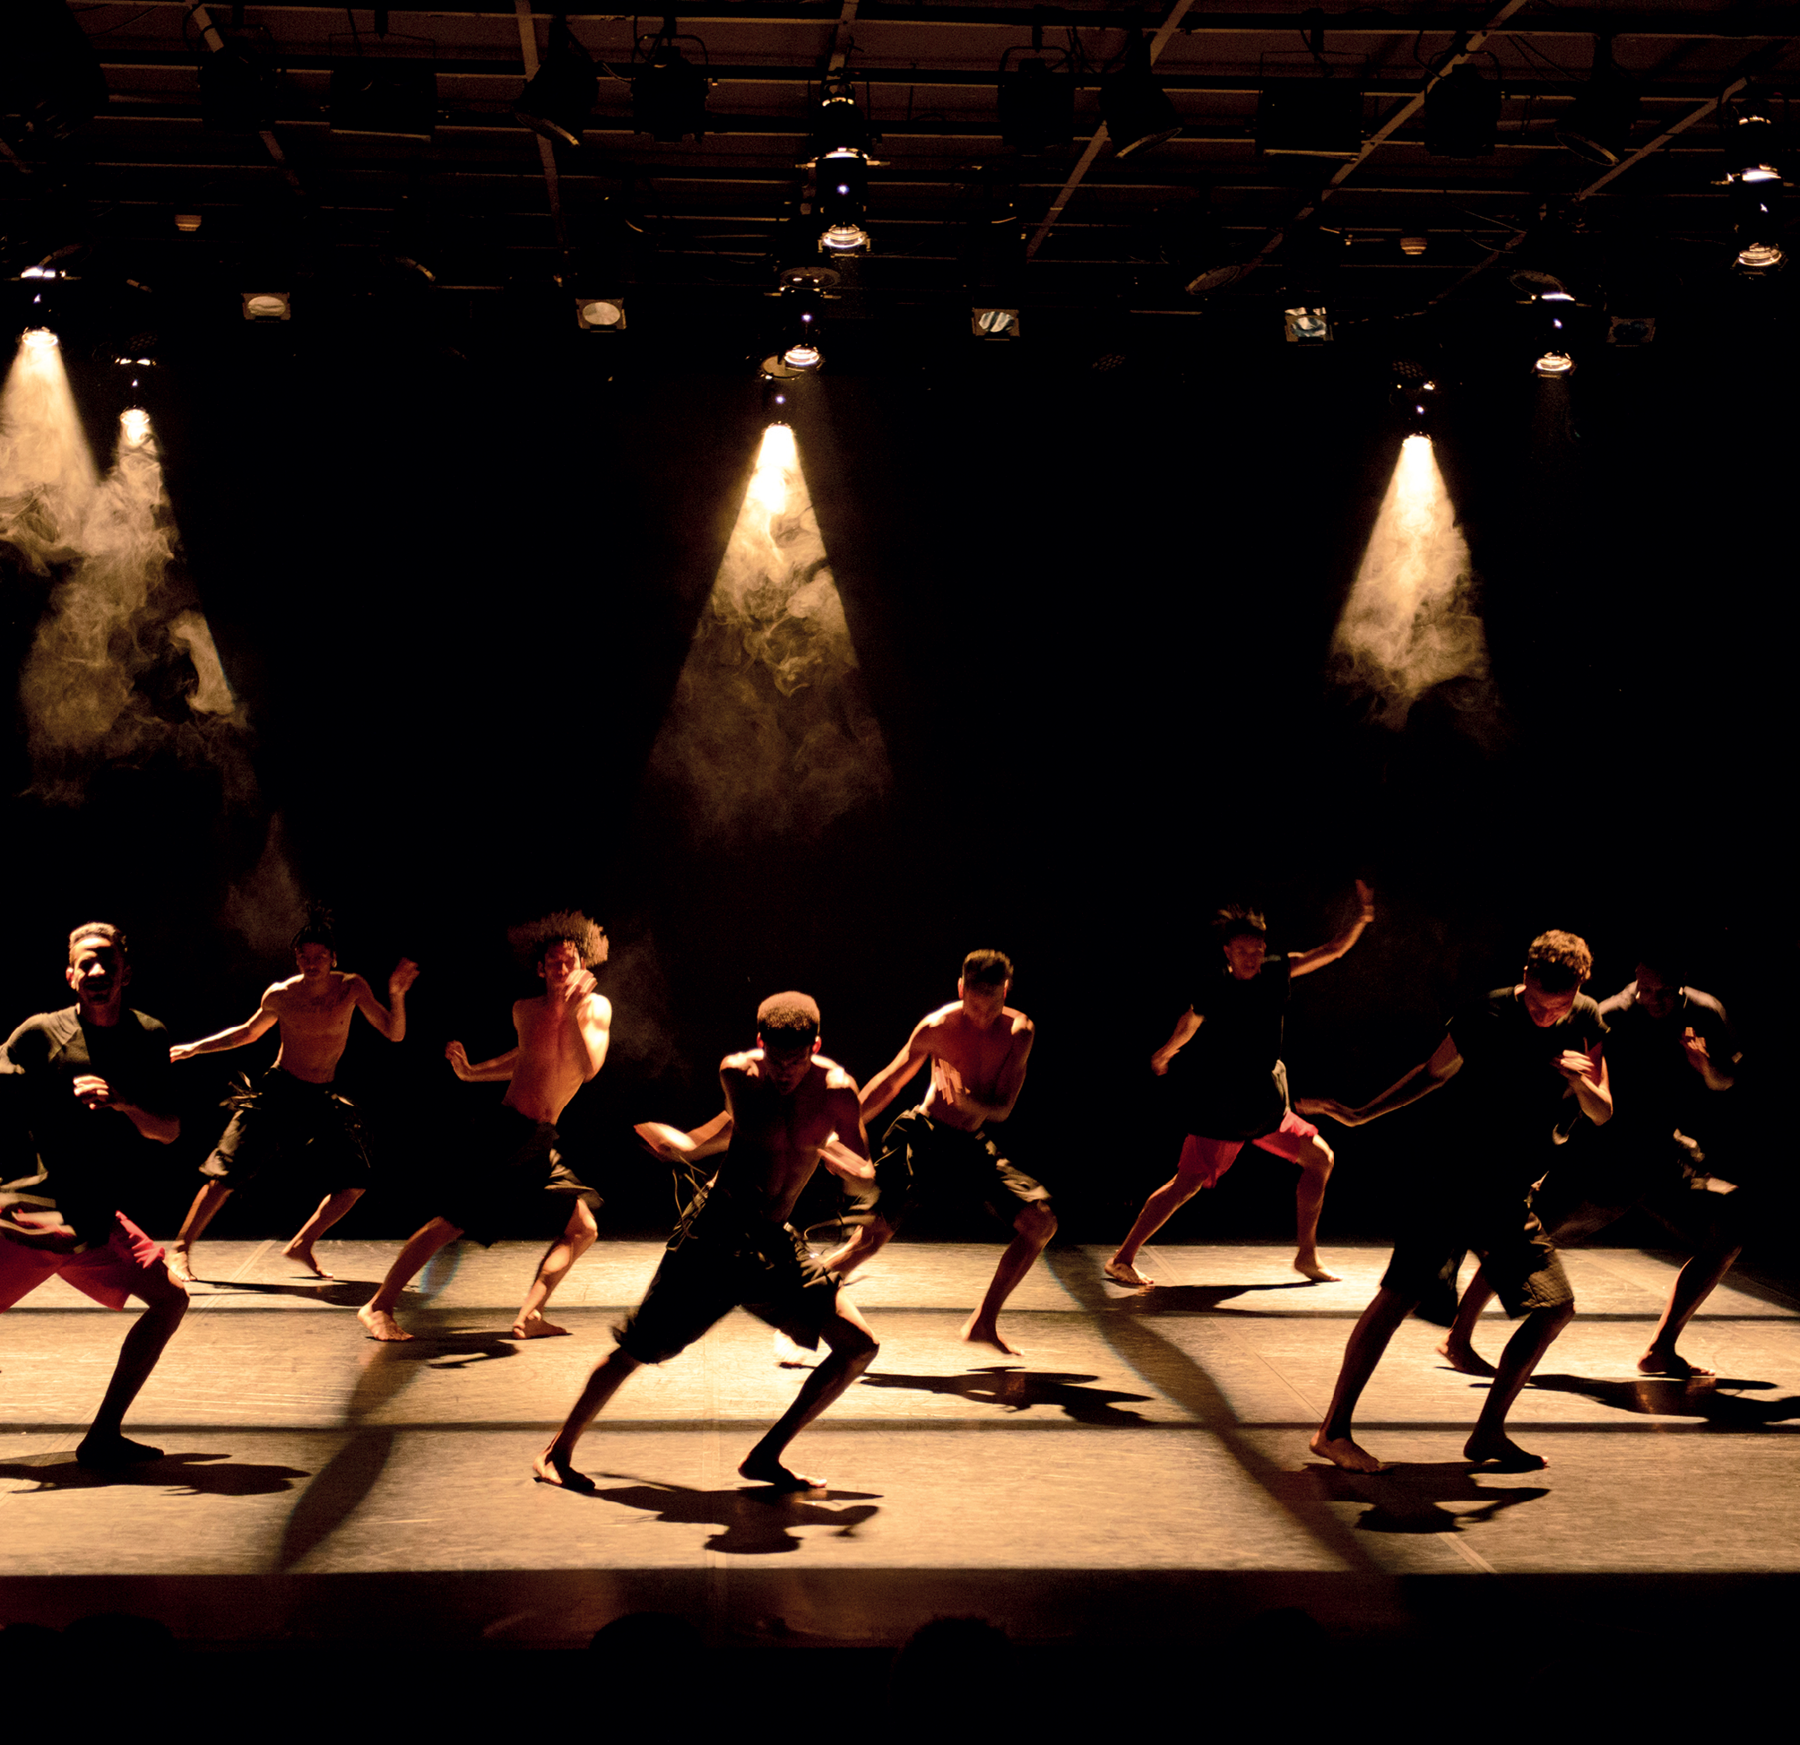 Fotografia. Sobre um palco, um grupo de oito jovens bailarinos faz o mesmo movimento, com as pernas afastadas e flexionadas e os braços flexionados. No teto, há refletores que jogam sobre os bailarinos feixes de luz.